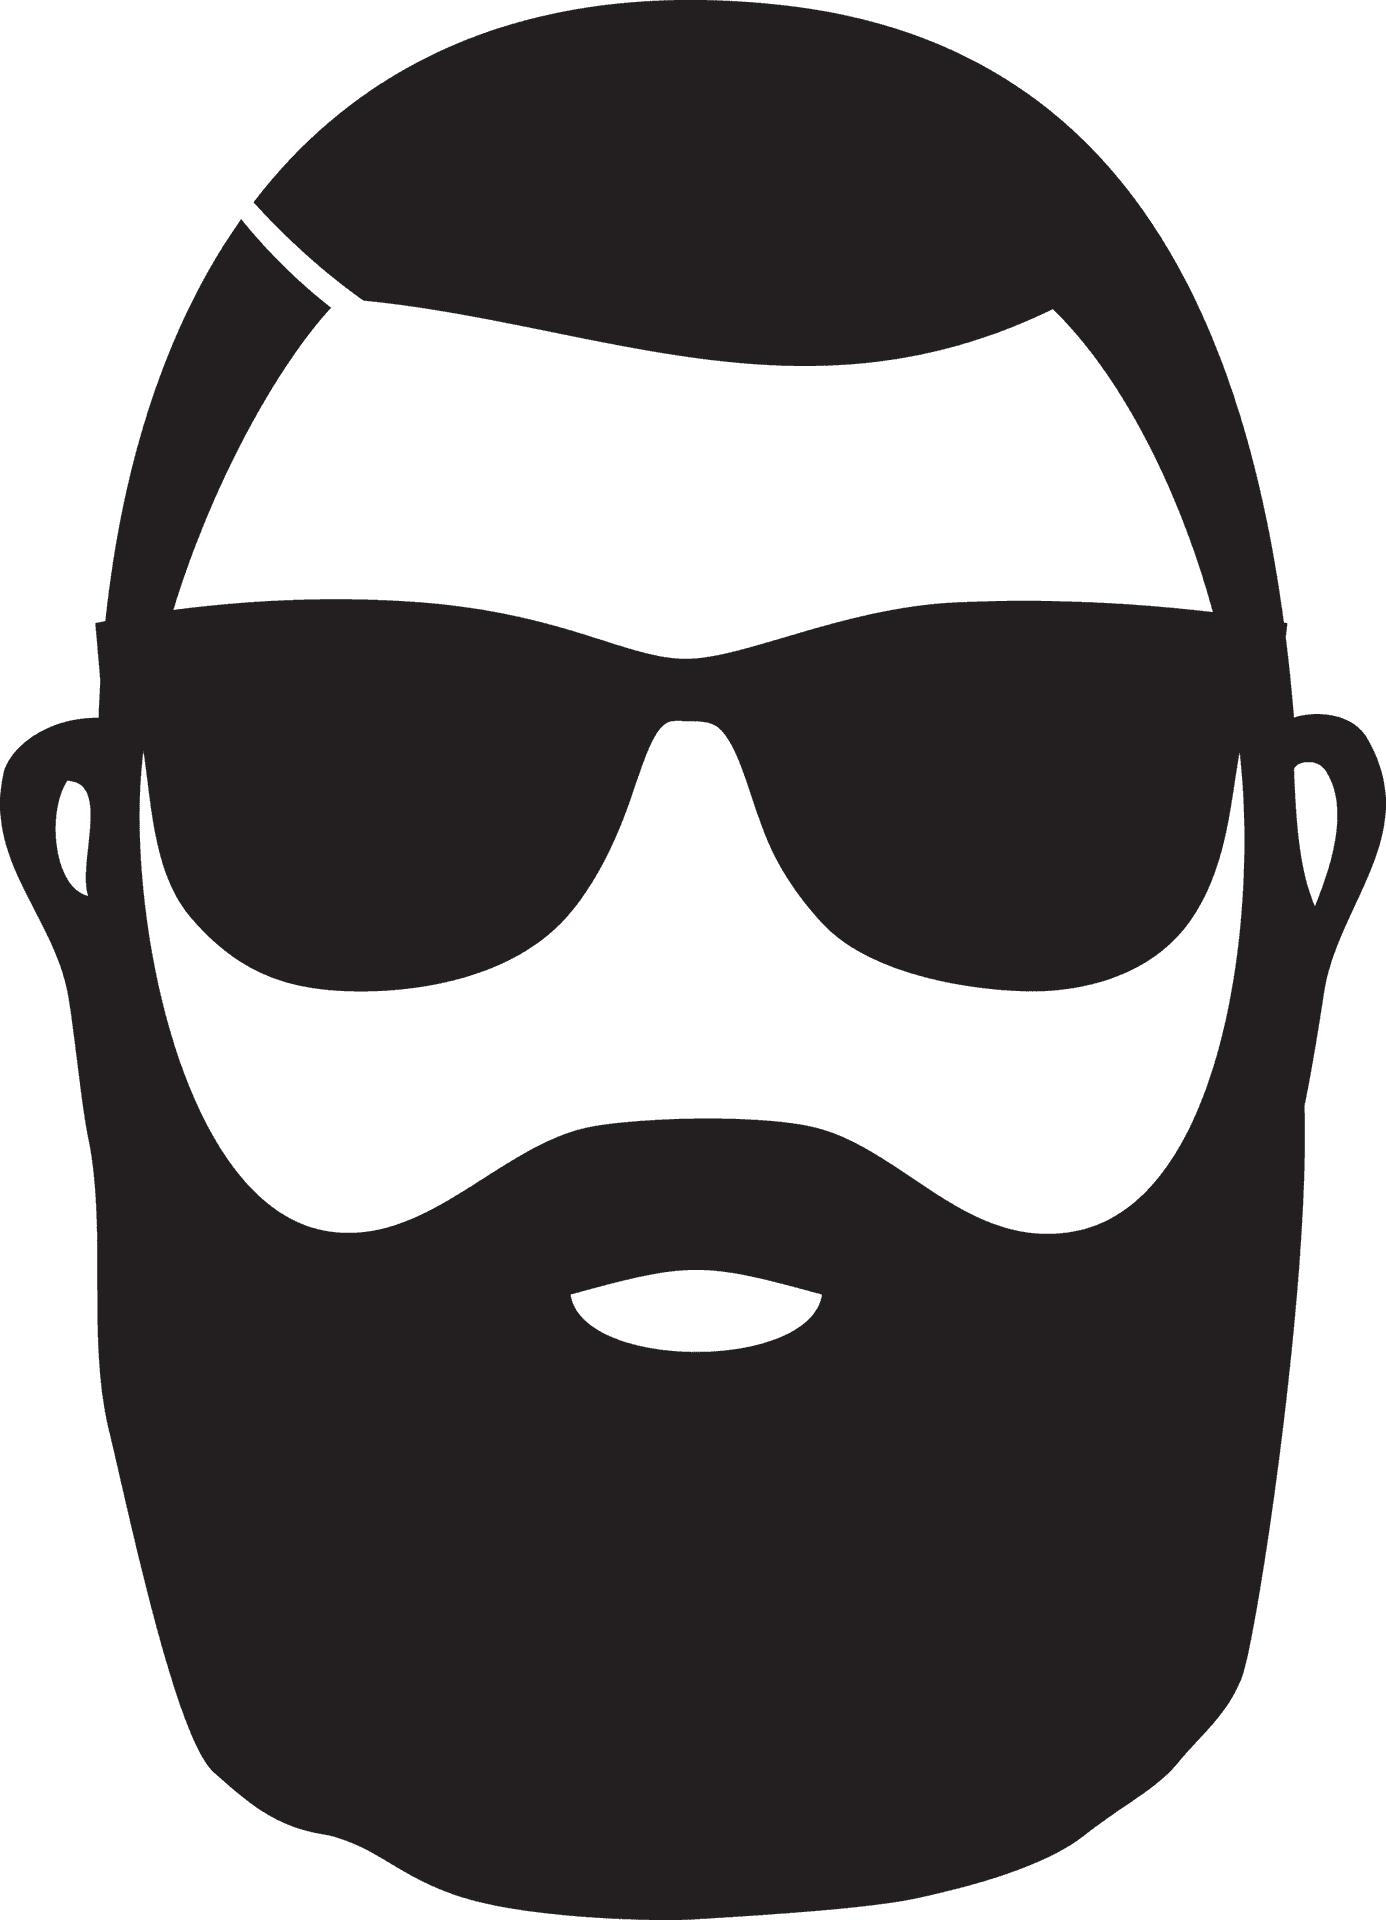 Stylized Beardand Sunglasses Icon PNG